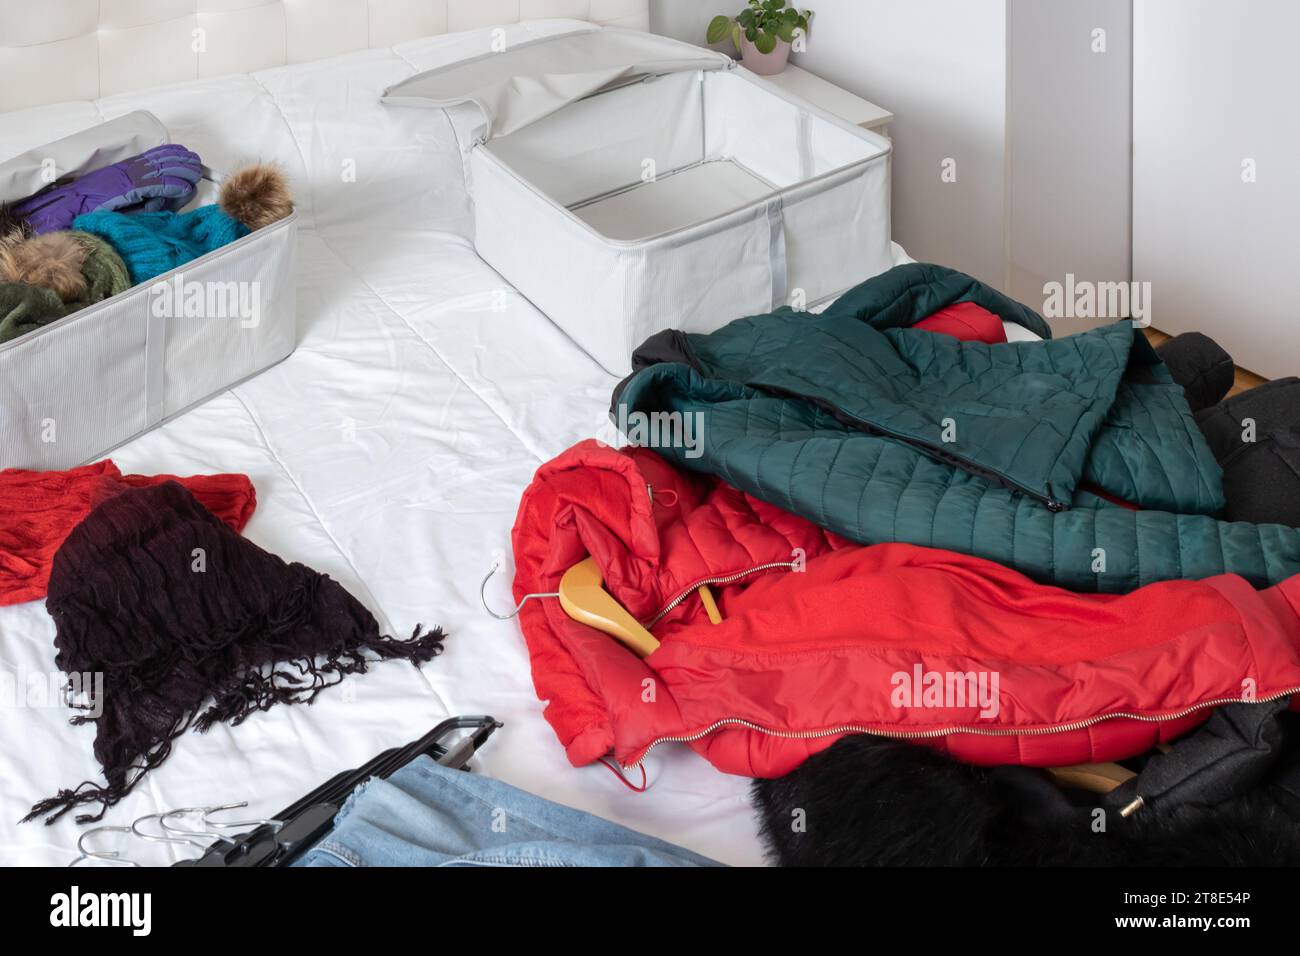 Photo horizontale, d'une pièce avec des vêtements d'hiver couchés sur le dessus du lit, à recueillir à l'intérieur des boîtes en tissu. Changer de placard. Banque D'Images